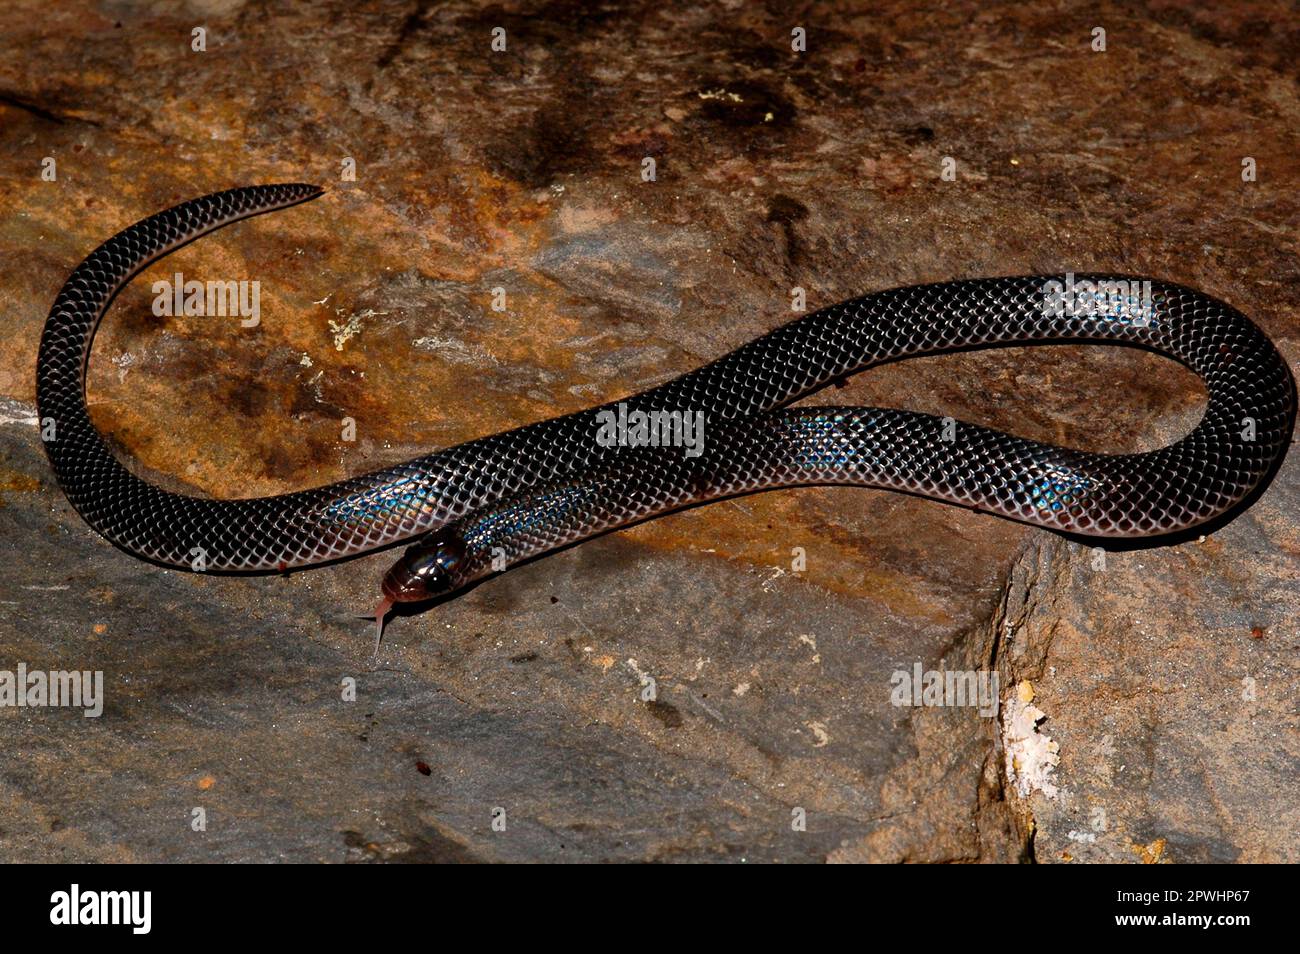 Shovelnose snake Stock Photo